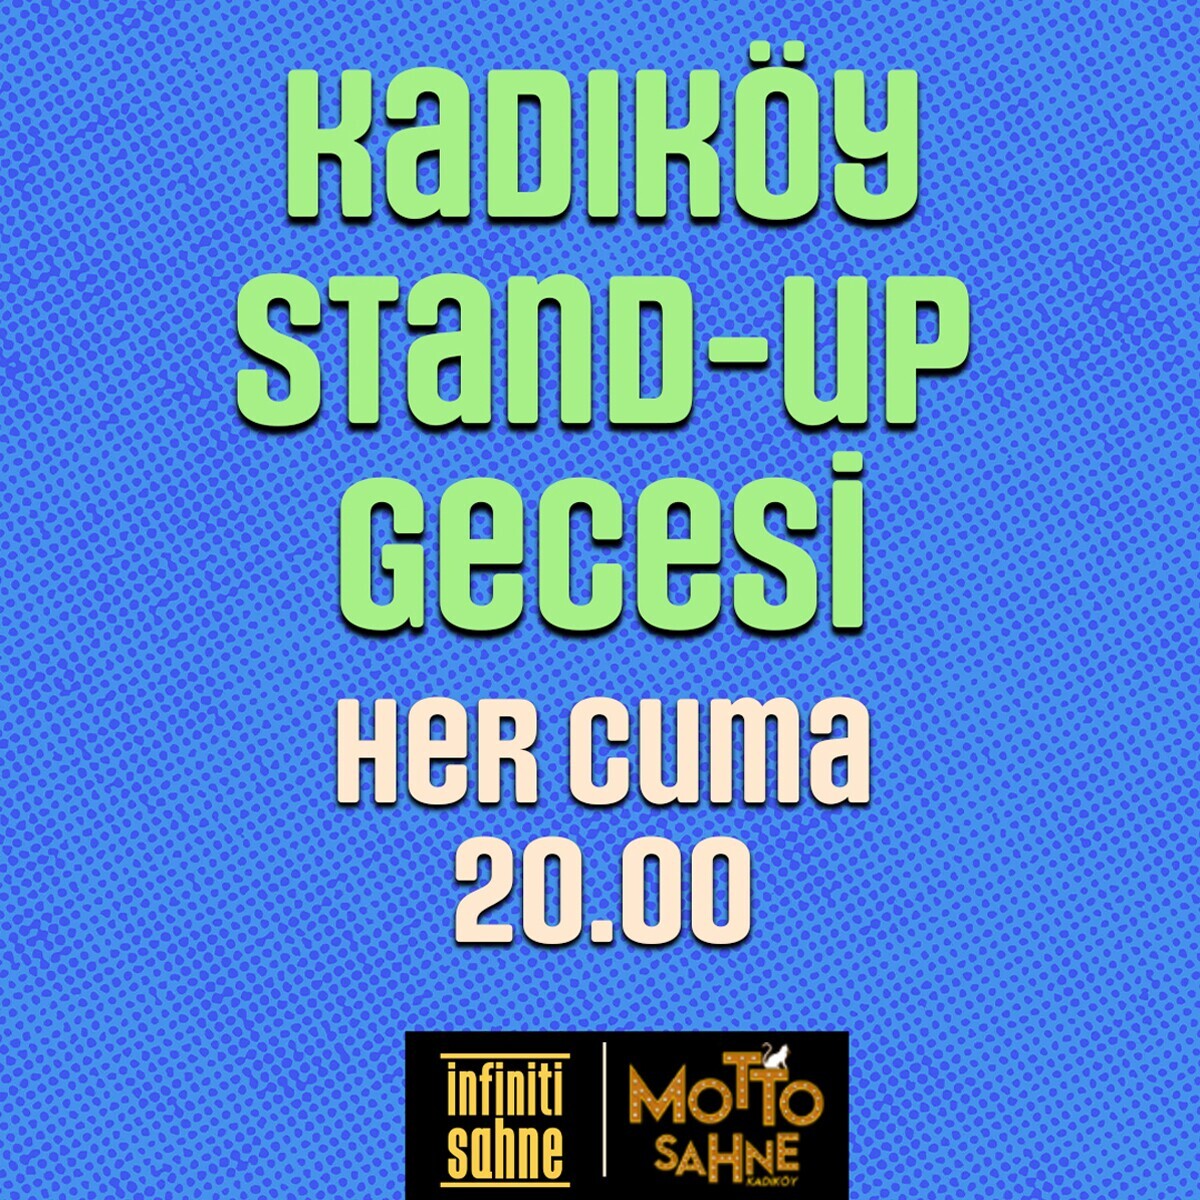 Kadıköy Stand-Up Gecesi Gösteri Bileti